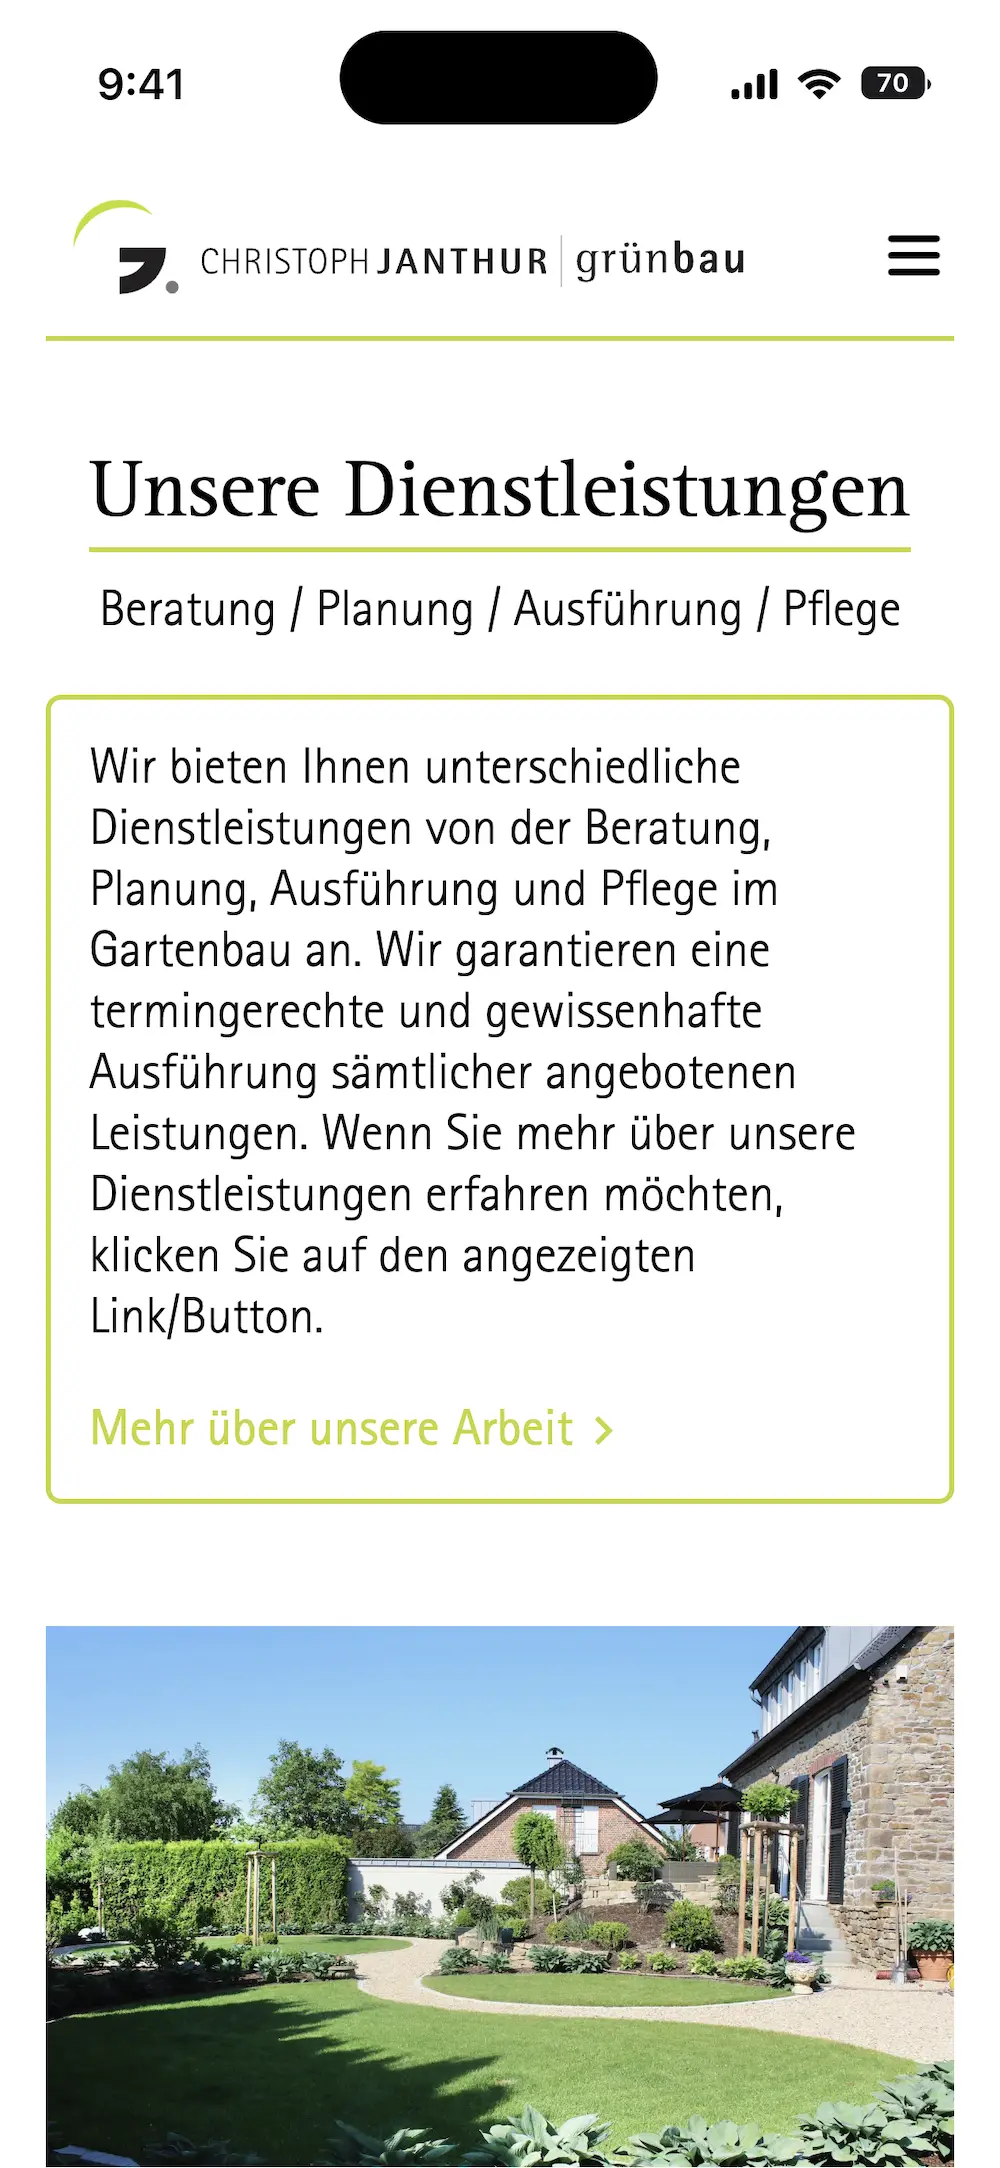 Mobile Ansicht der Webseite von Christoph Janthur Grünbau mit Fokus auf Dienstleistungen in der Gartengestaltung